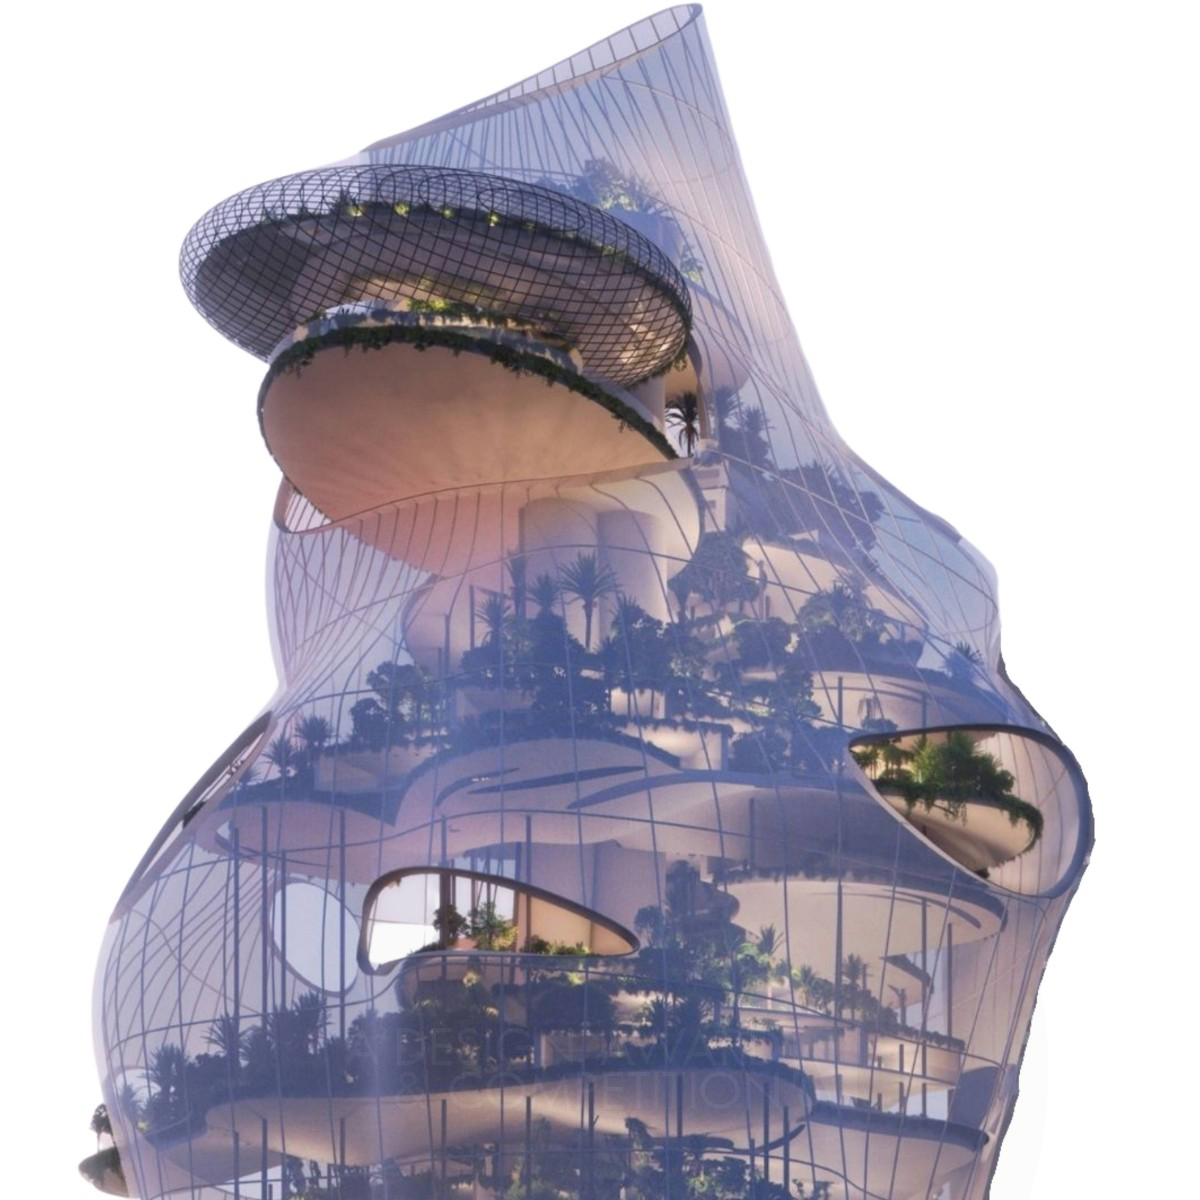 Aera Vertical Resort Concept by Tara Metress